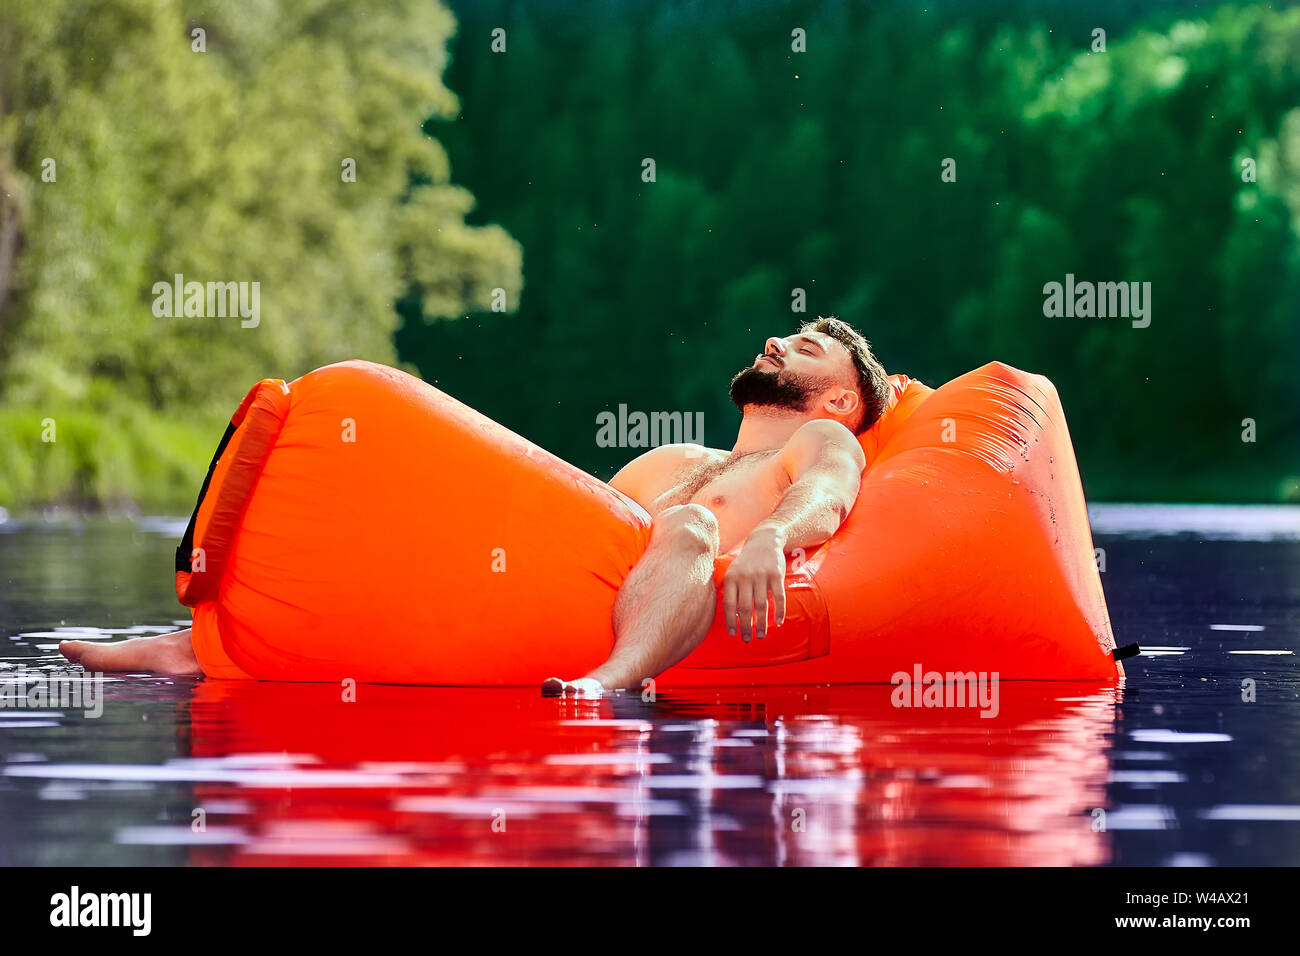 Un joven está descansando acostado en una tumbona naranja inflable flotando sobre la superficie del agua de un río del bosque. Camping durante el eco-turismo. Foto de stock